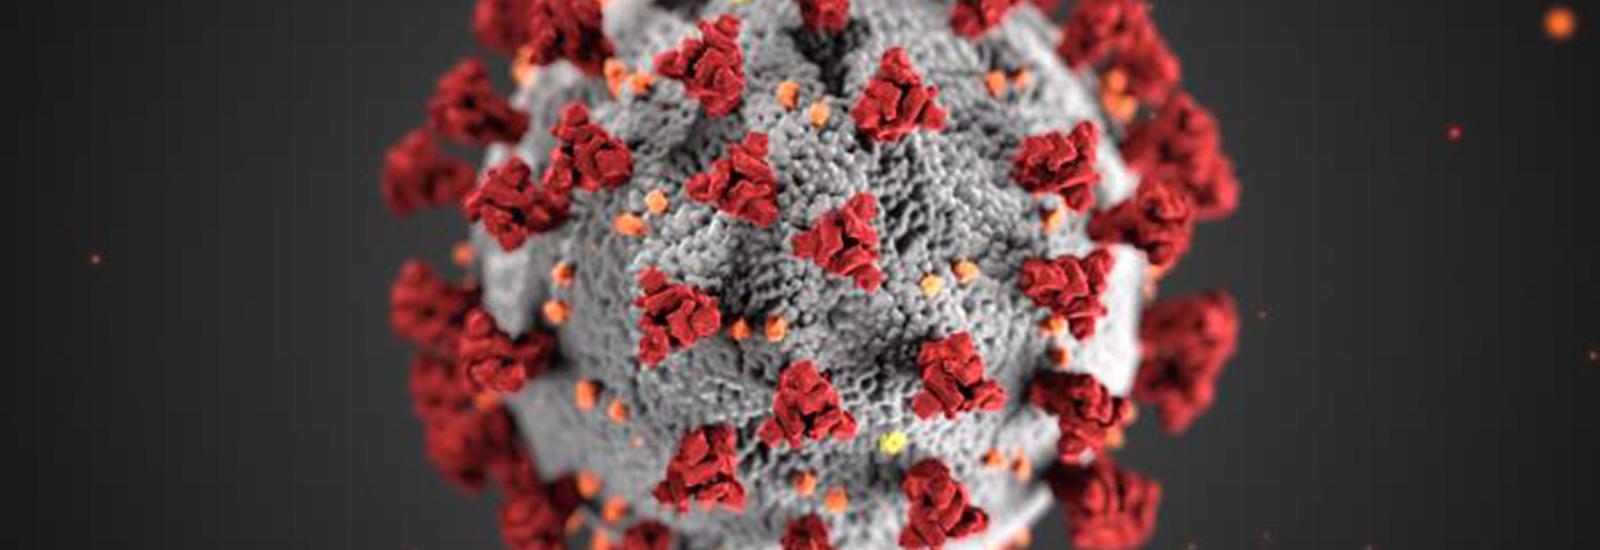 Model image of Corona Virus